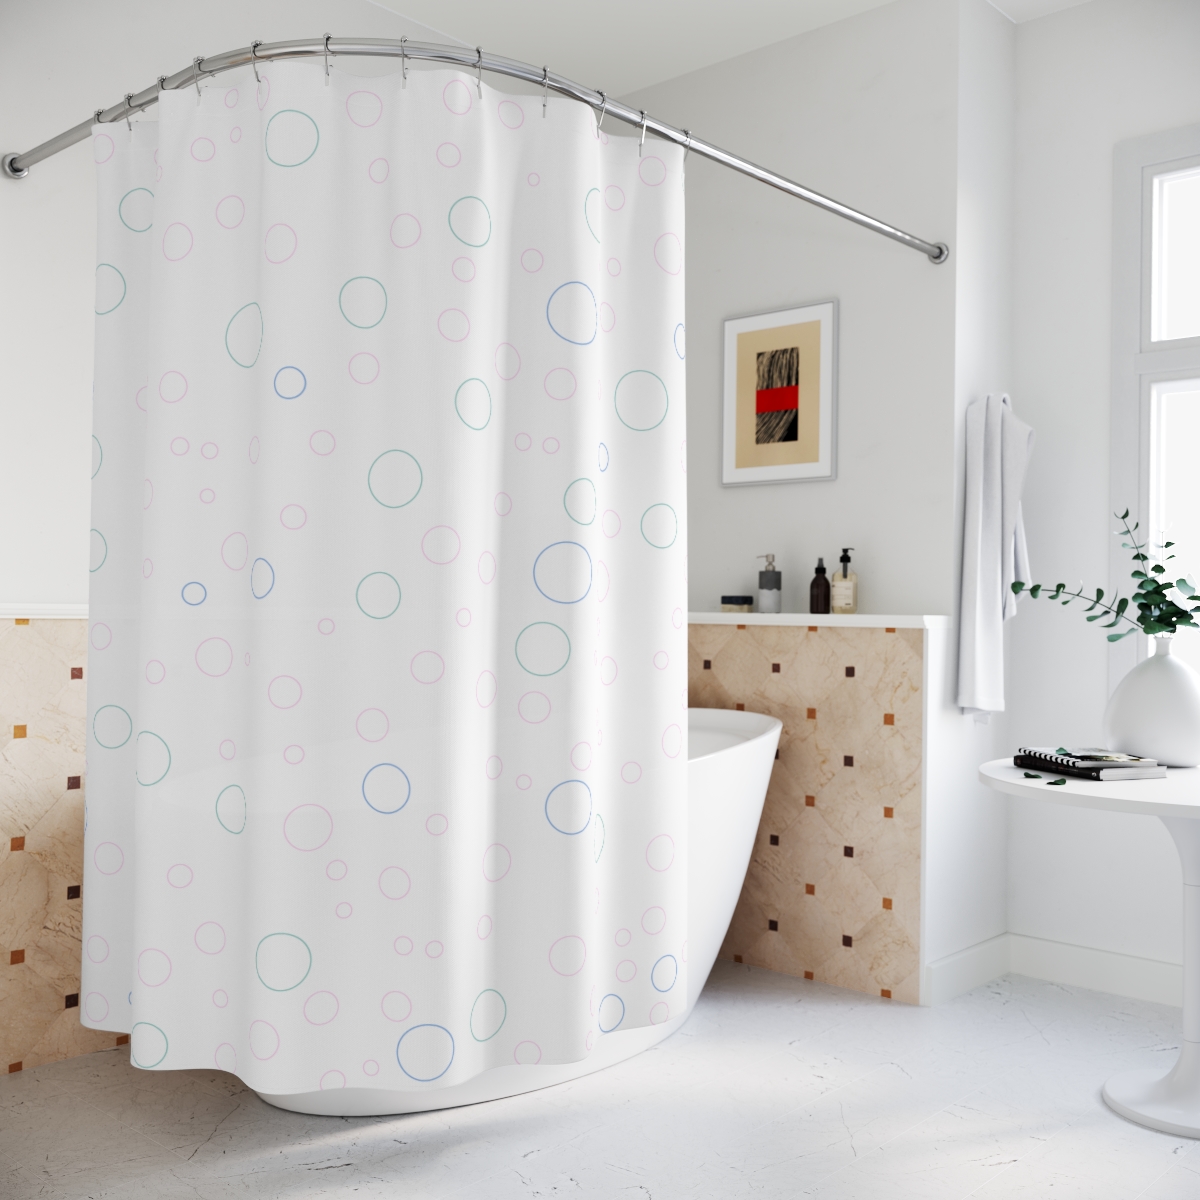 Bubbles Shower Curtain – blue, teal & pink bubbles